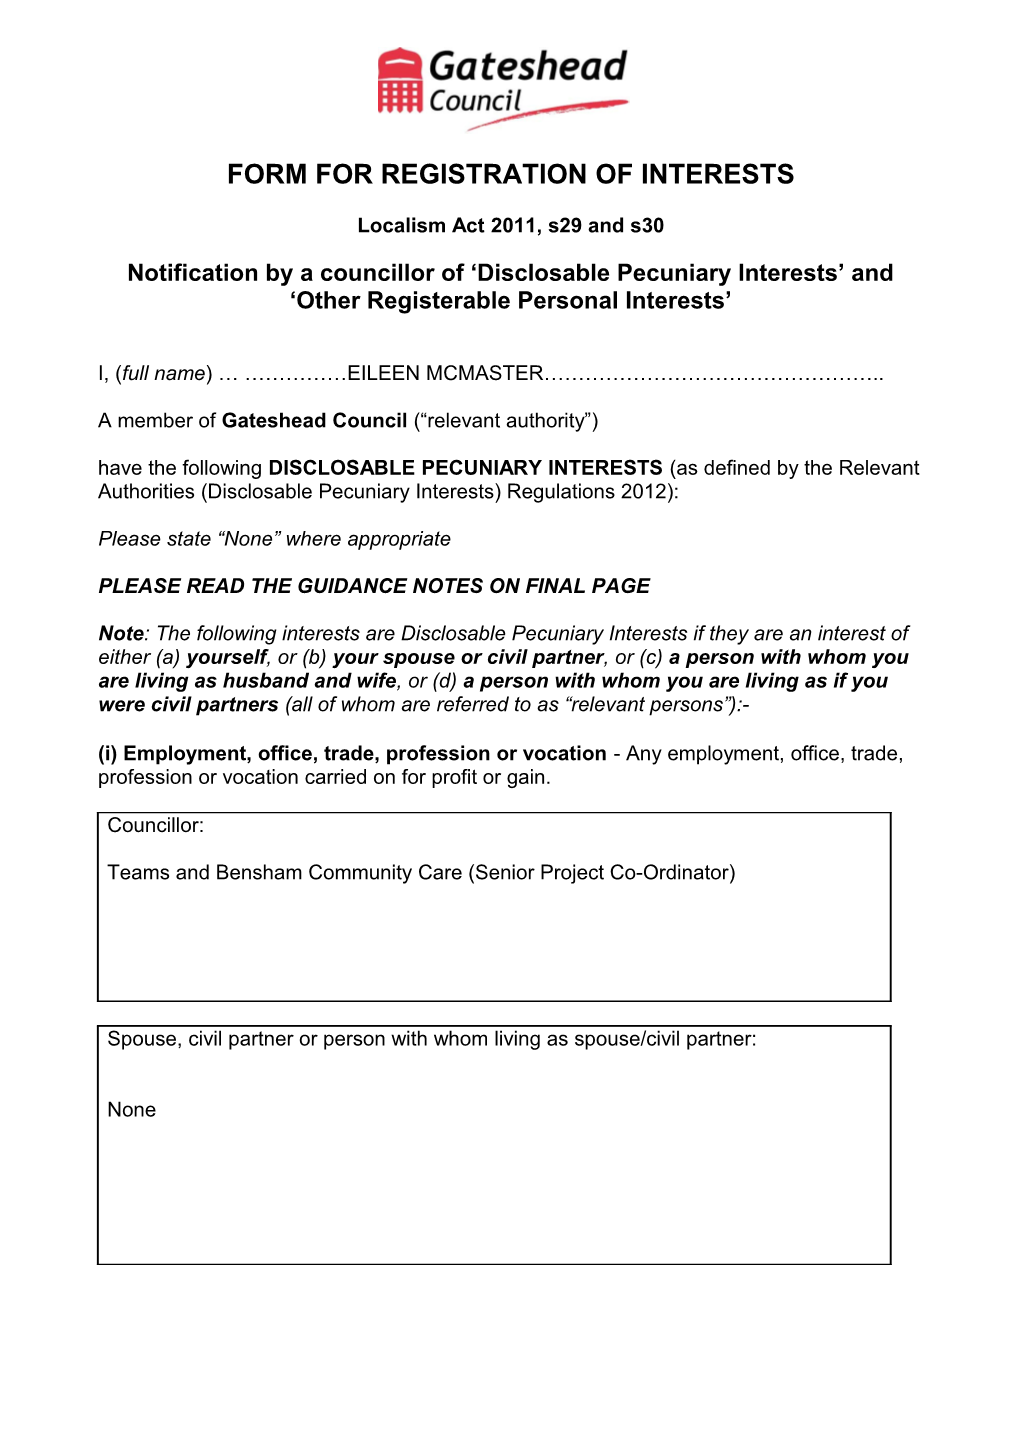 Form for Registration of Interests